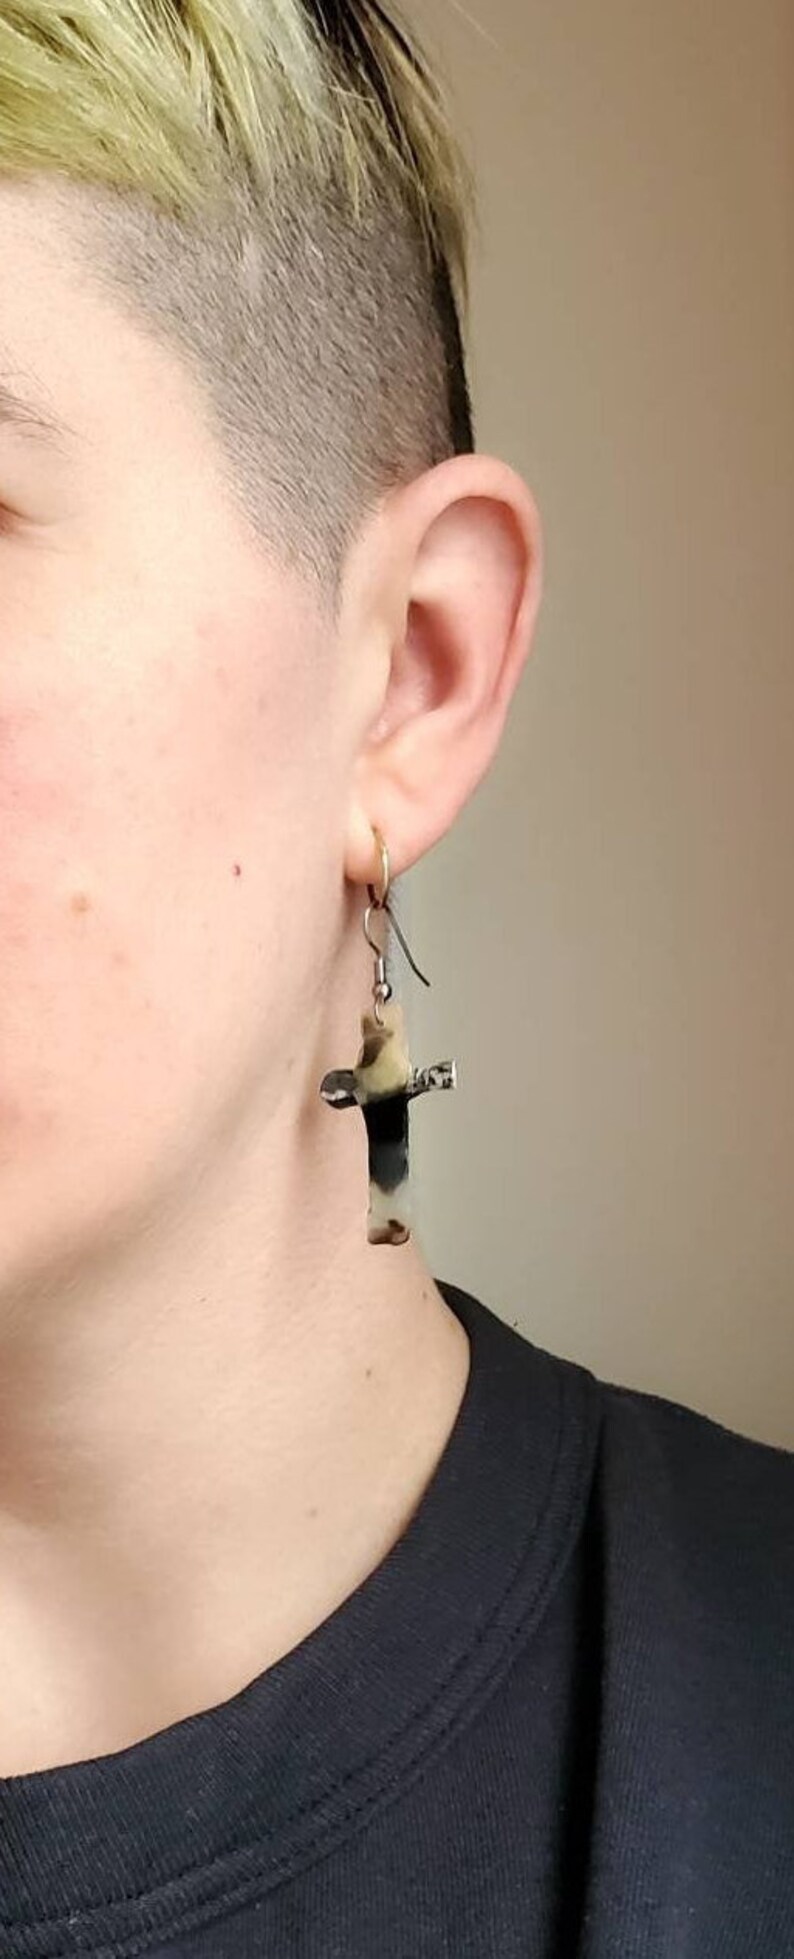 Recycled Plastic Cross Earring Lesbian Earrings Weird Earrings Statement Earrings Handmade Jewelry Funky Earrings, Gothic jewelry image 4